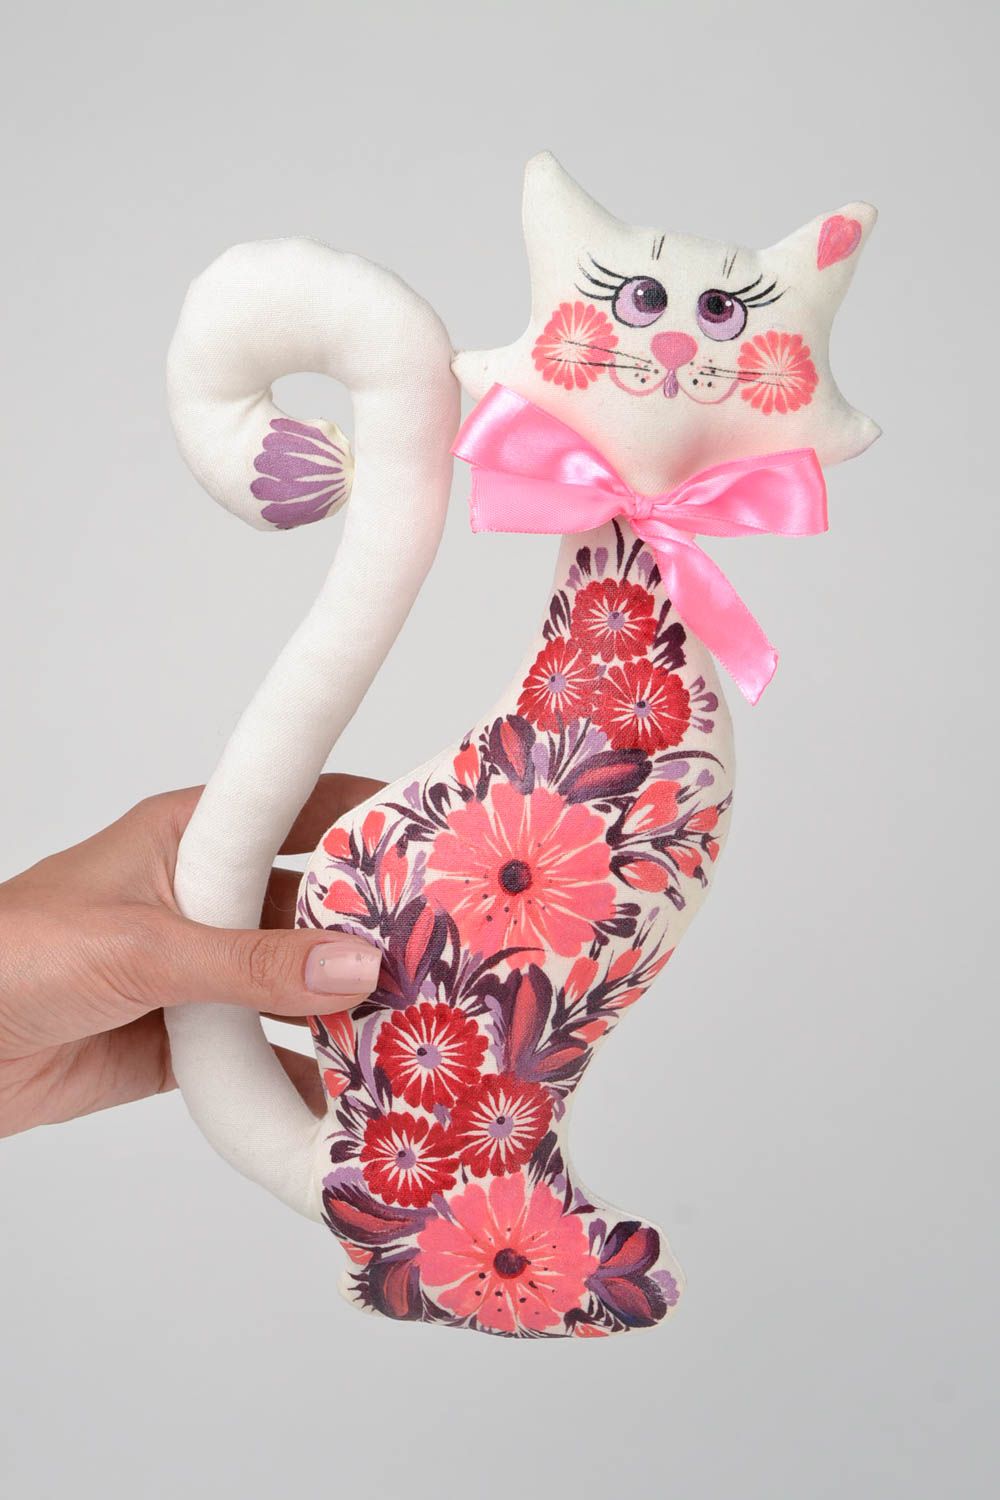 Игрушка кошка игрушка ручной работы интересный подарок Белая кошка в цветы фото 2